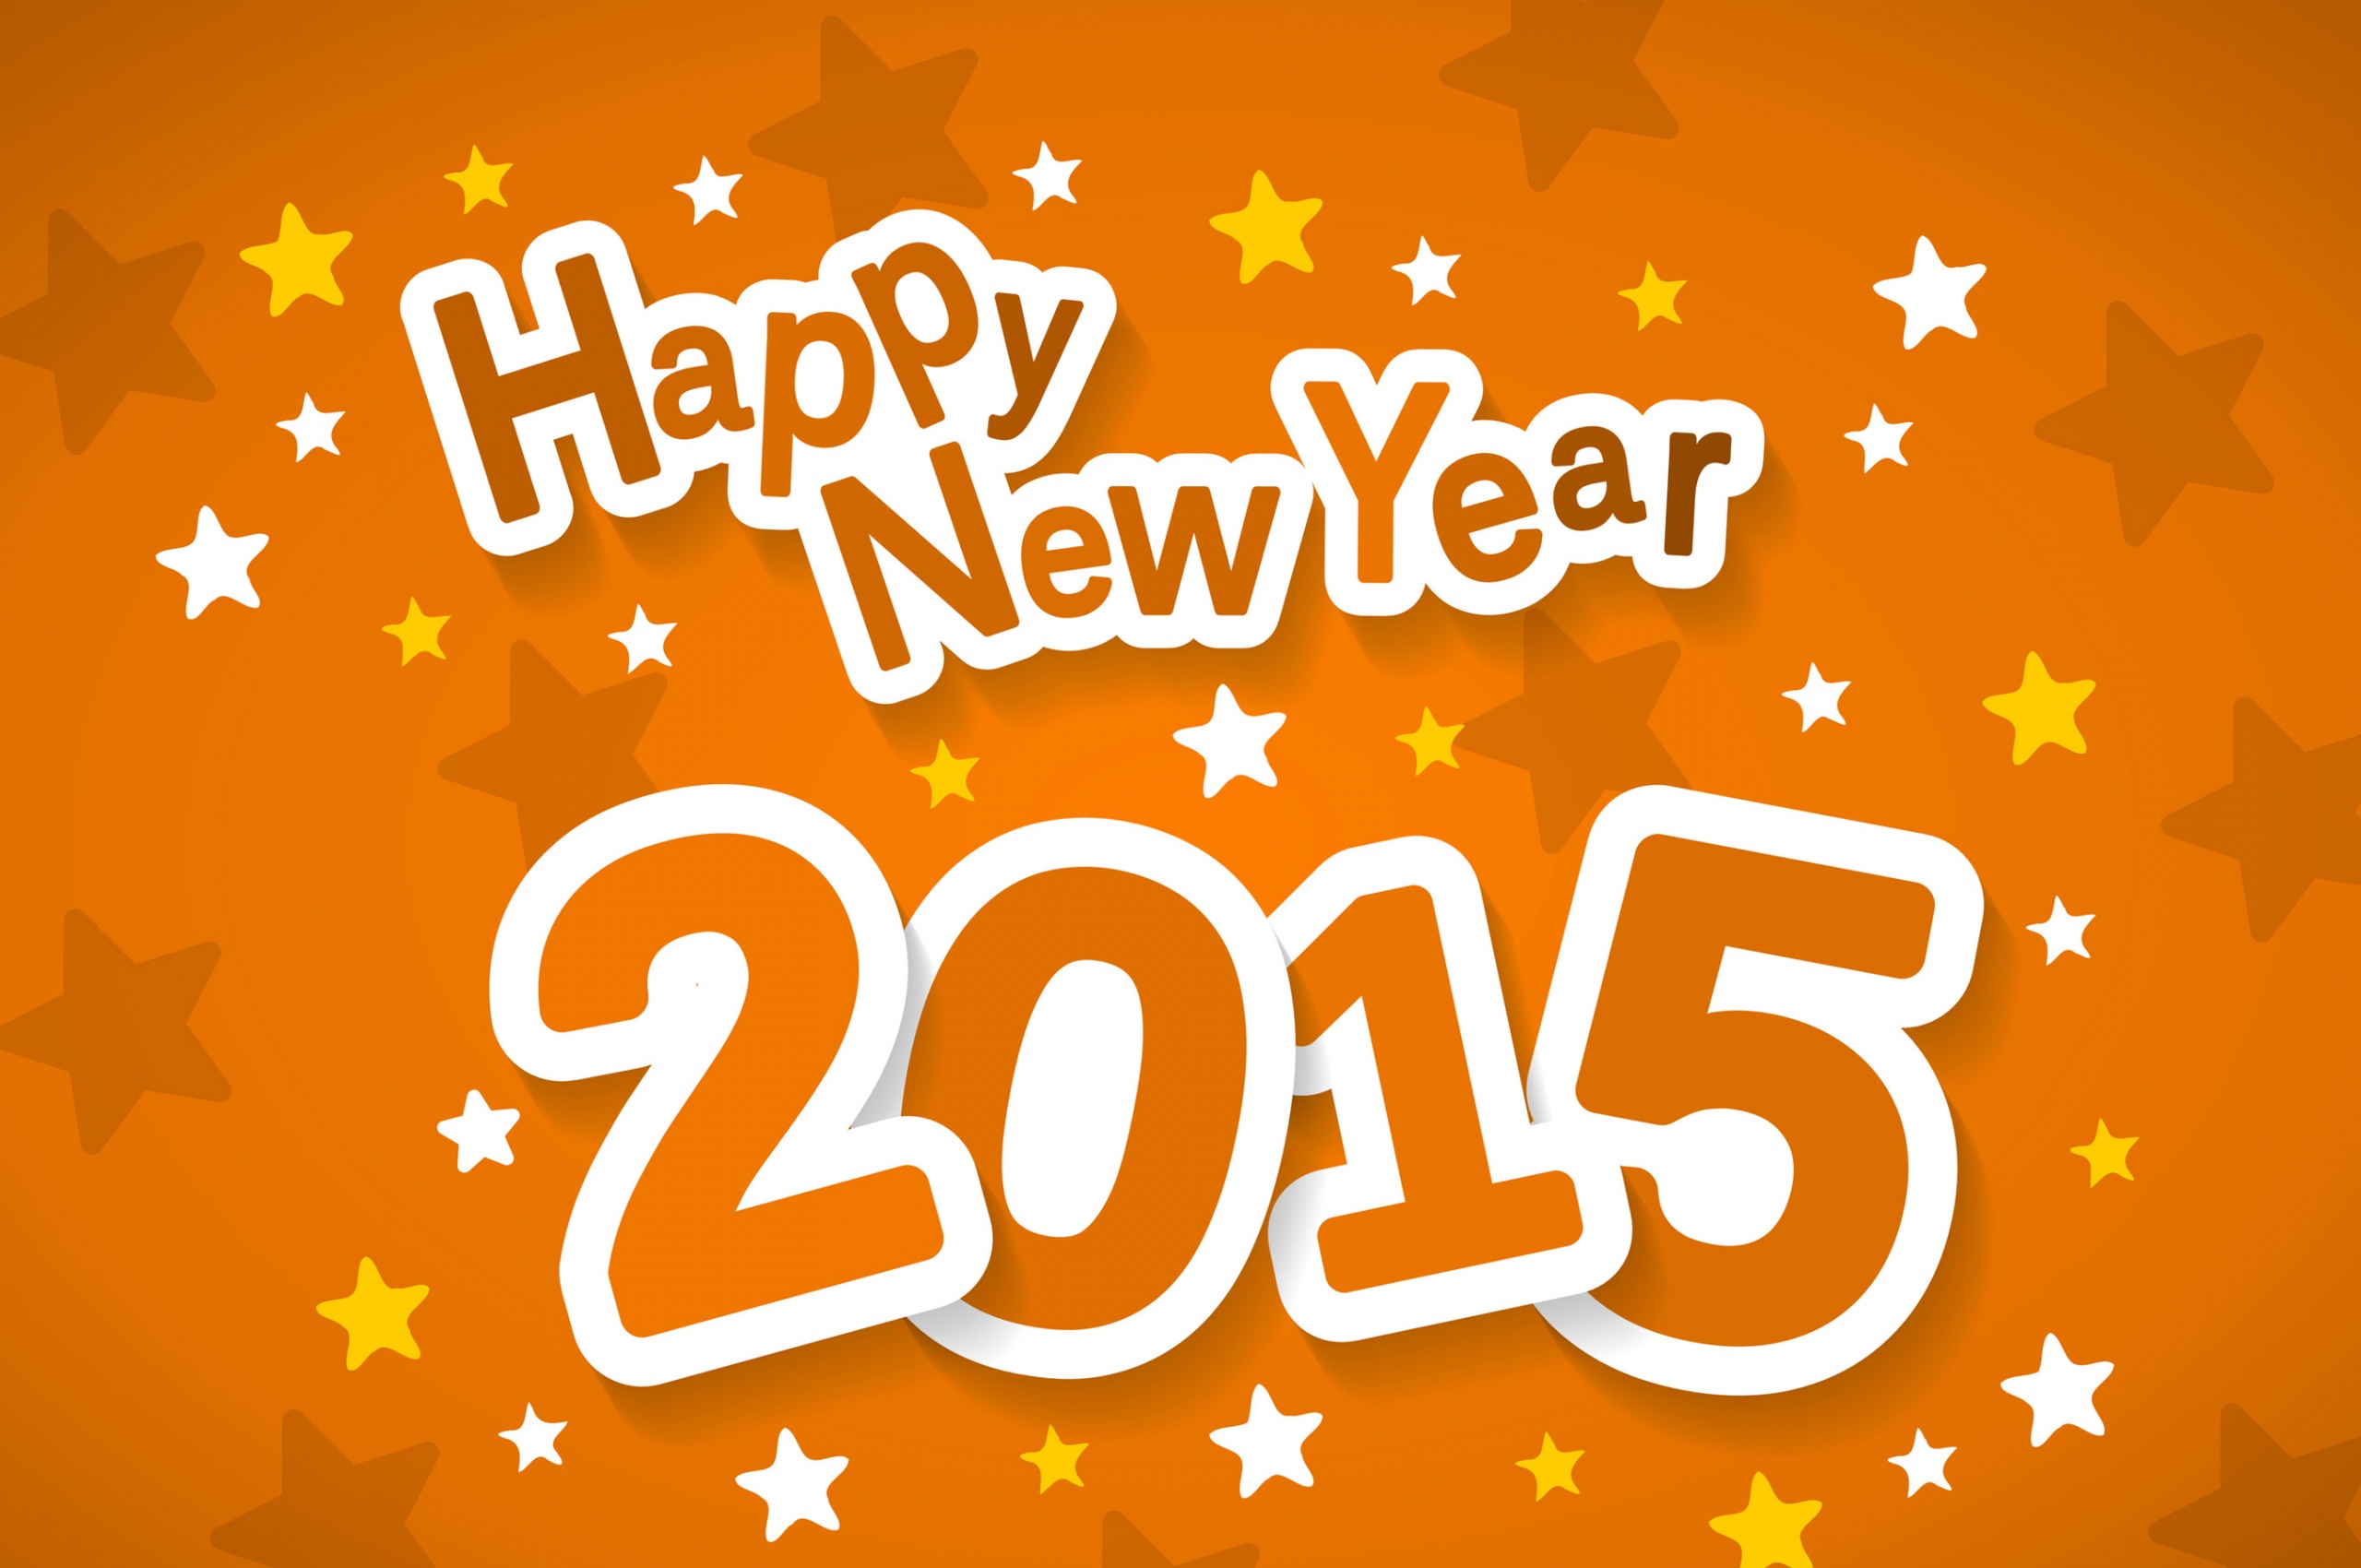 Holiday Happy New Year 2015